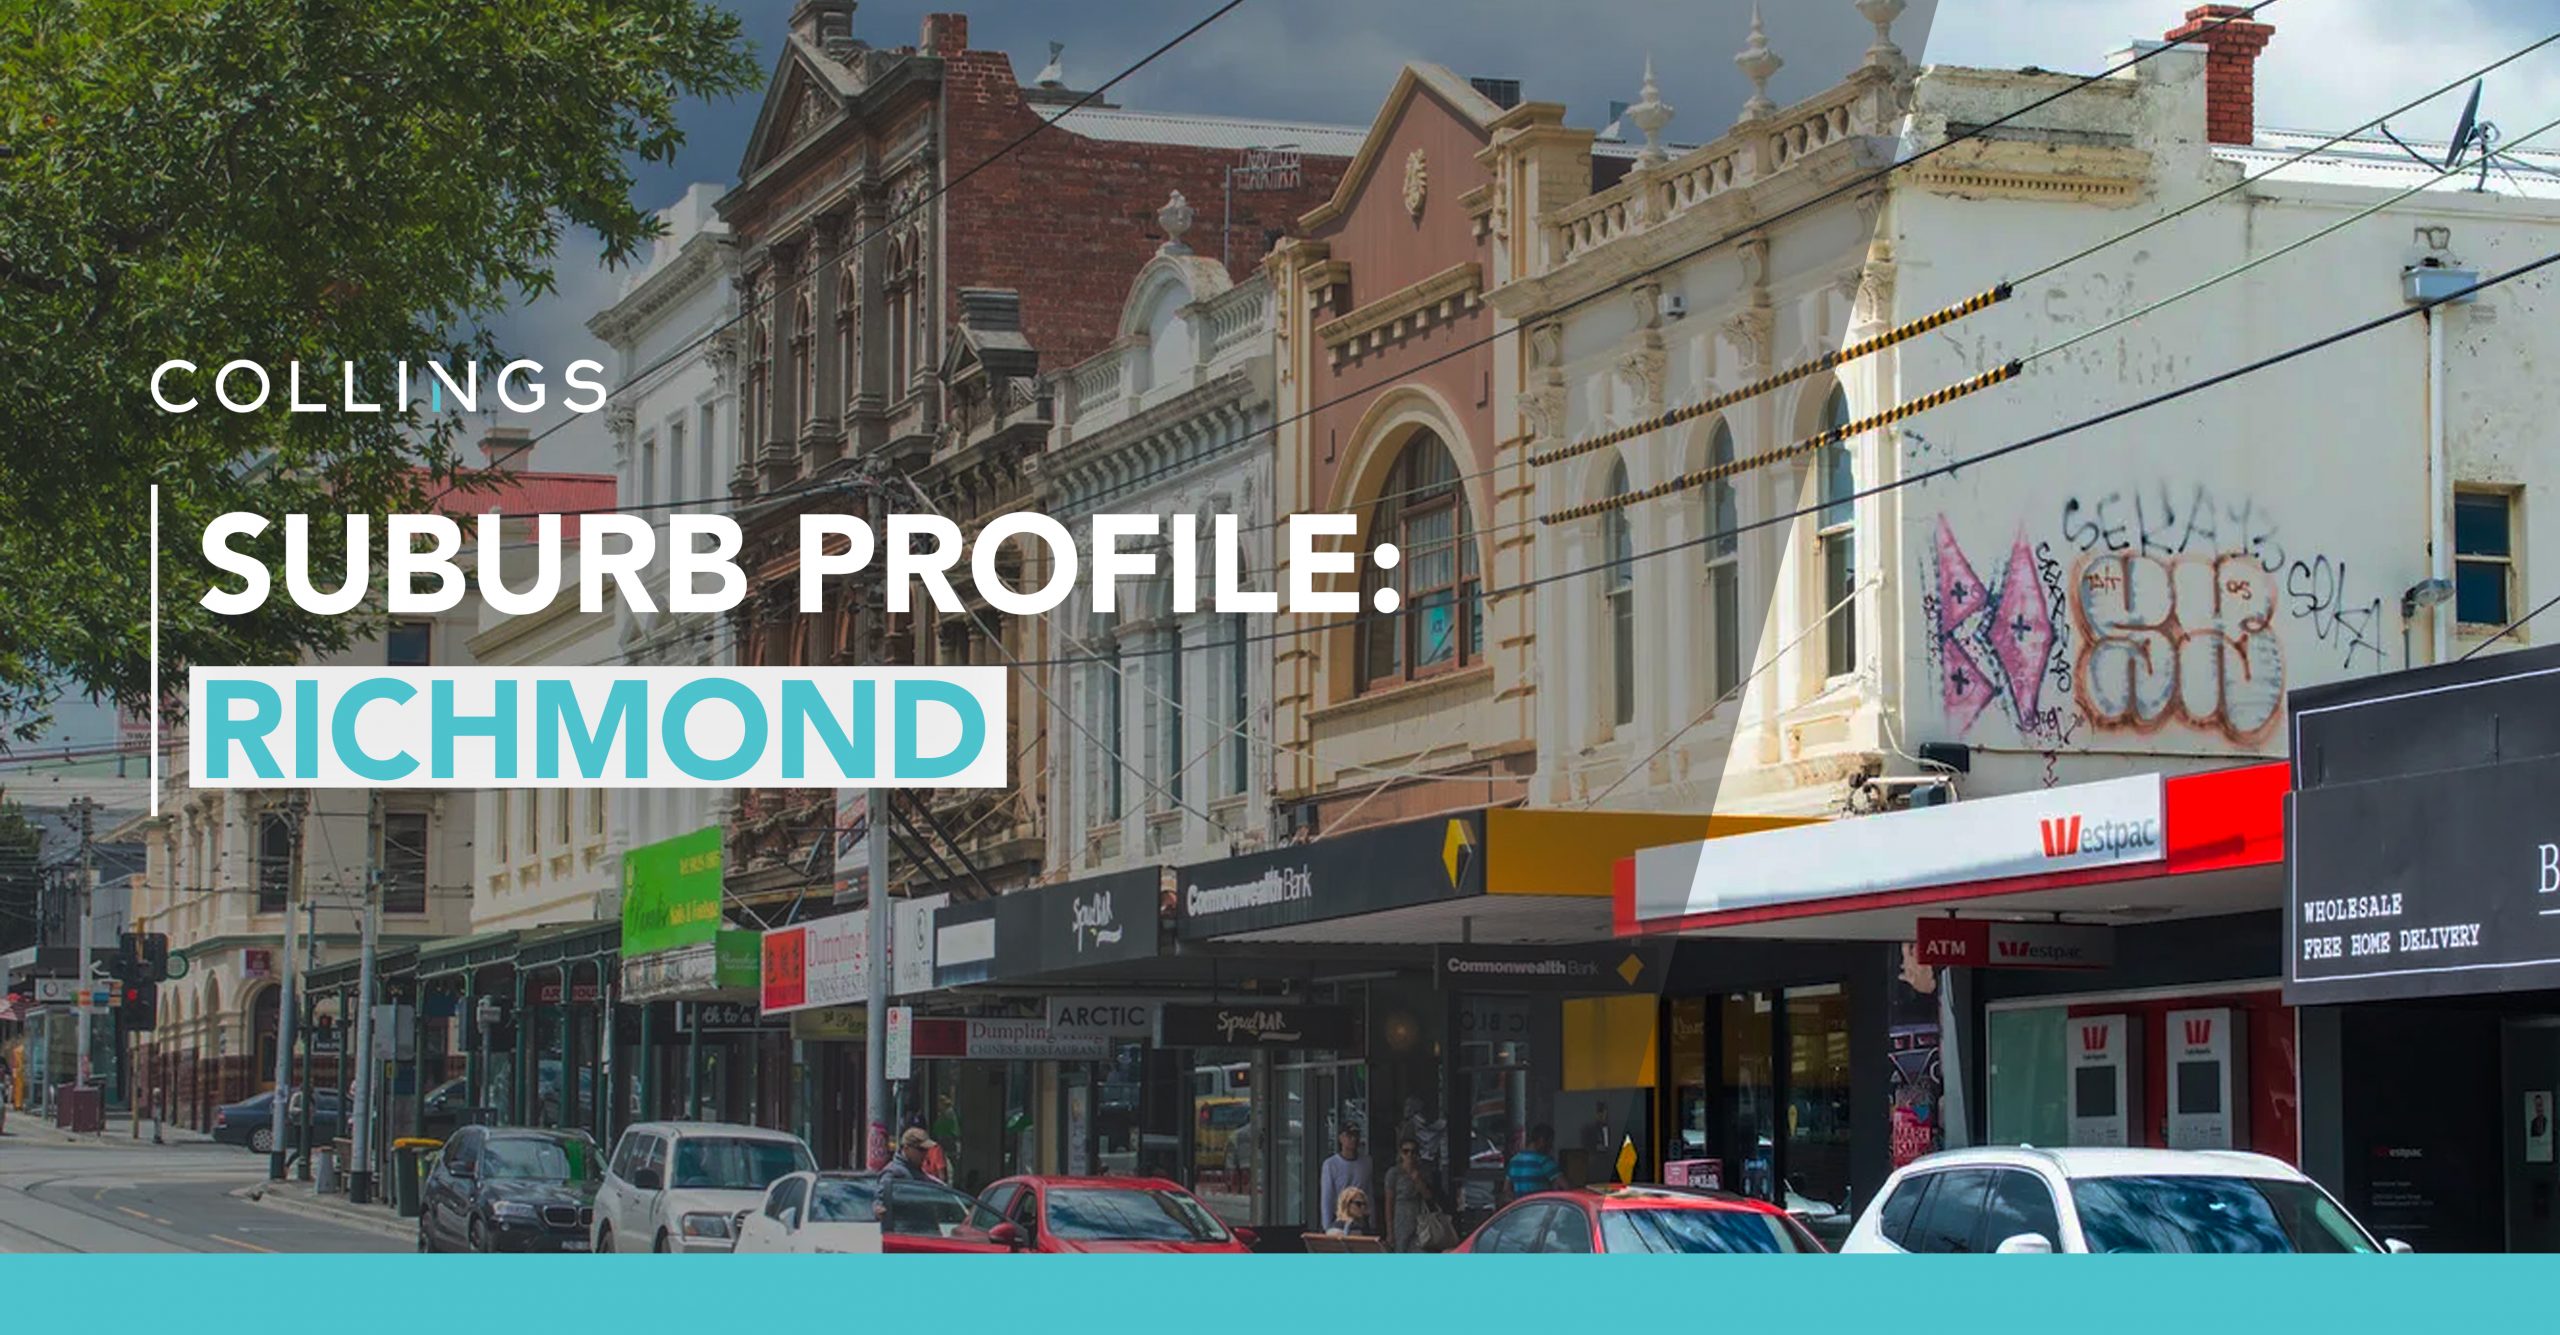 Suburb profile: Richmond